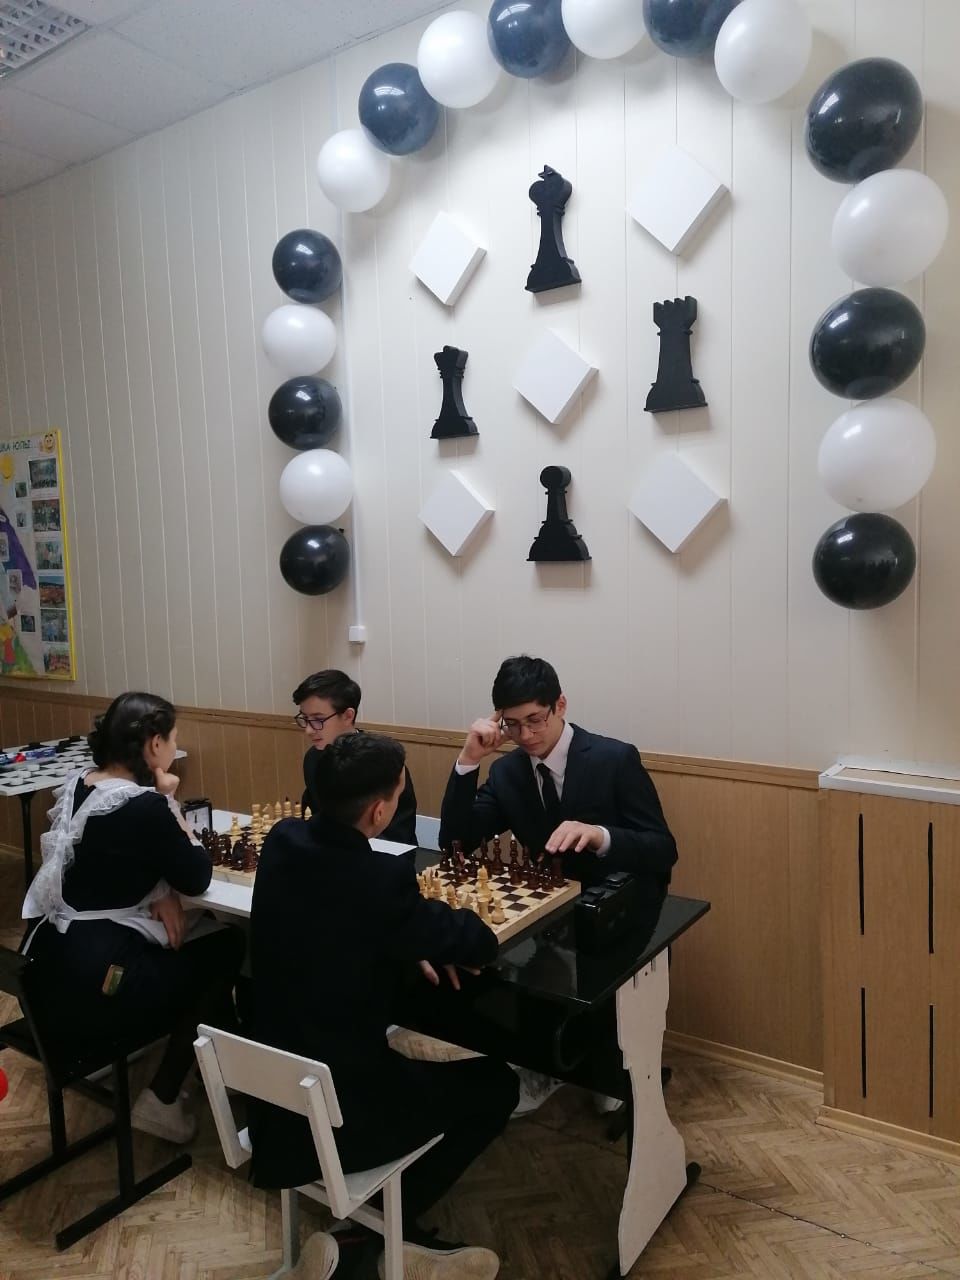 В Новошешминском районе открываются шахматные зоны